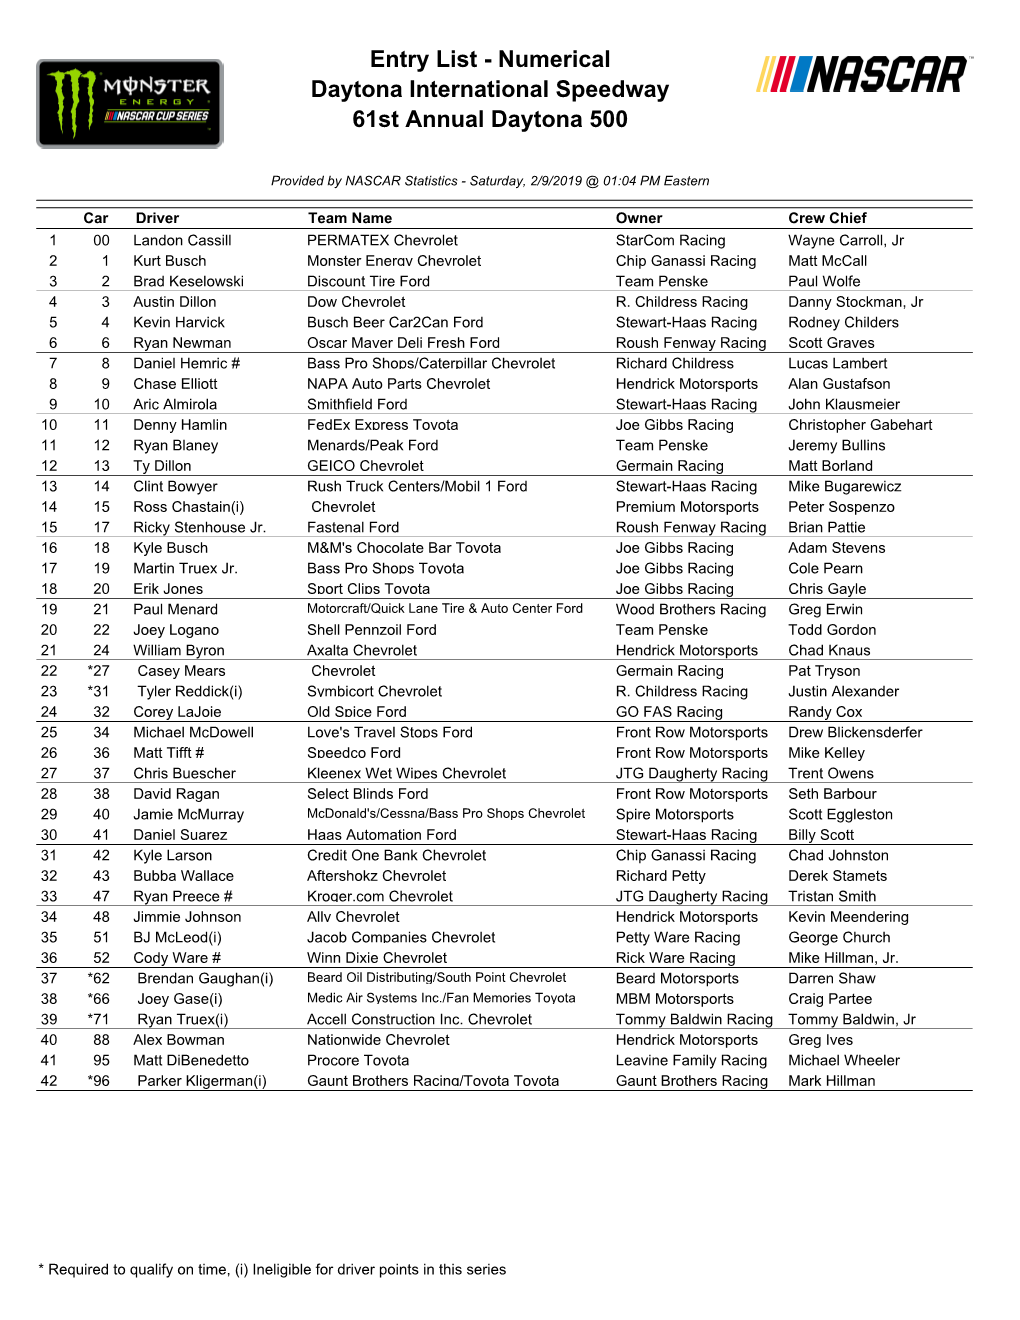 Entry List - Numerical Daytona International Speedway 61St Annual Daytona 500